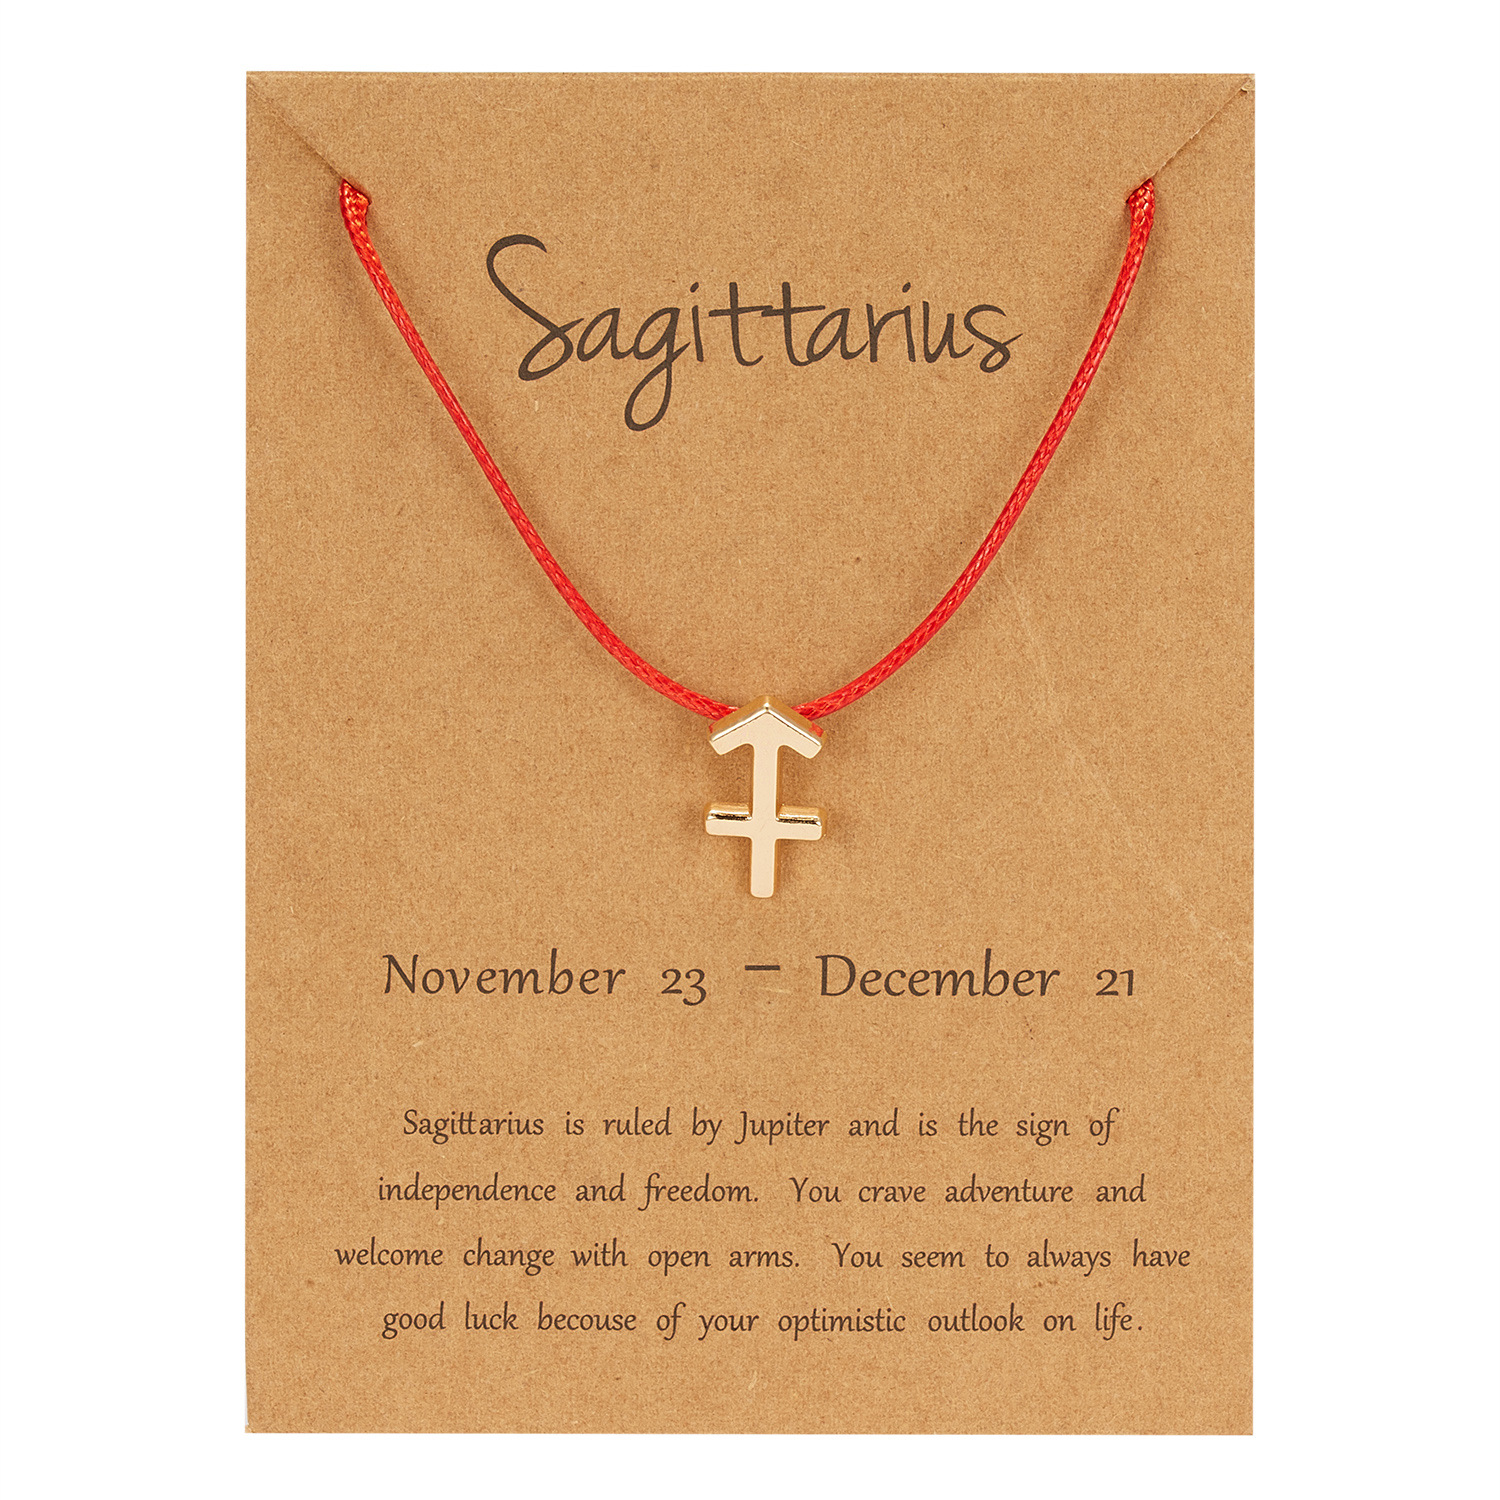 11:Red rope - Sagittarius